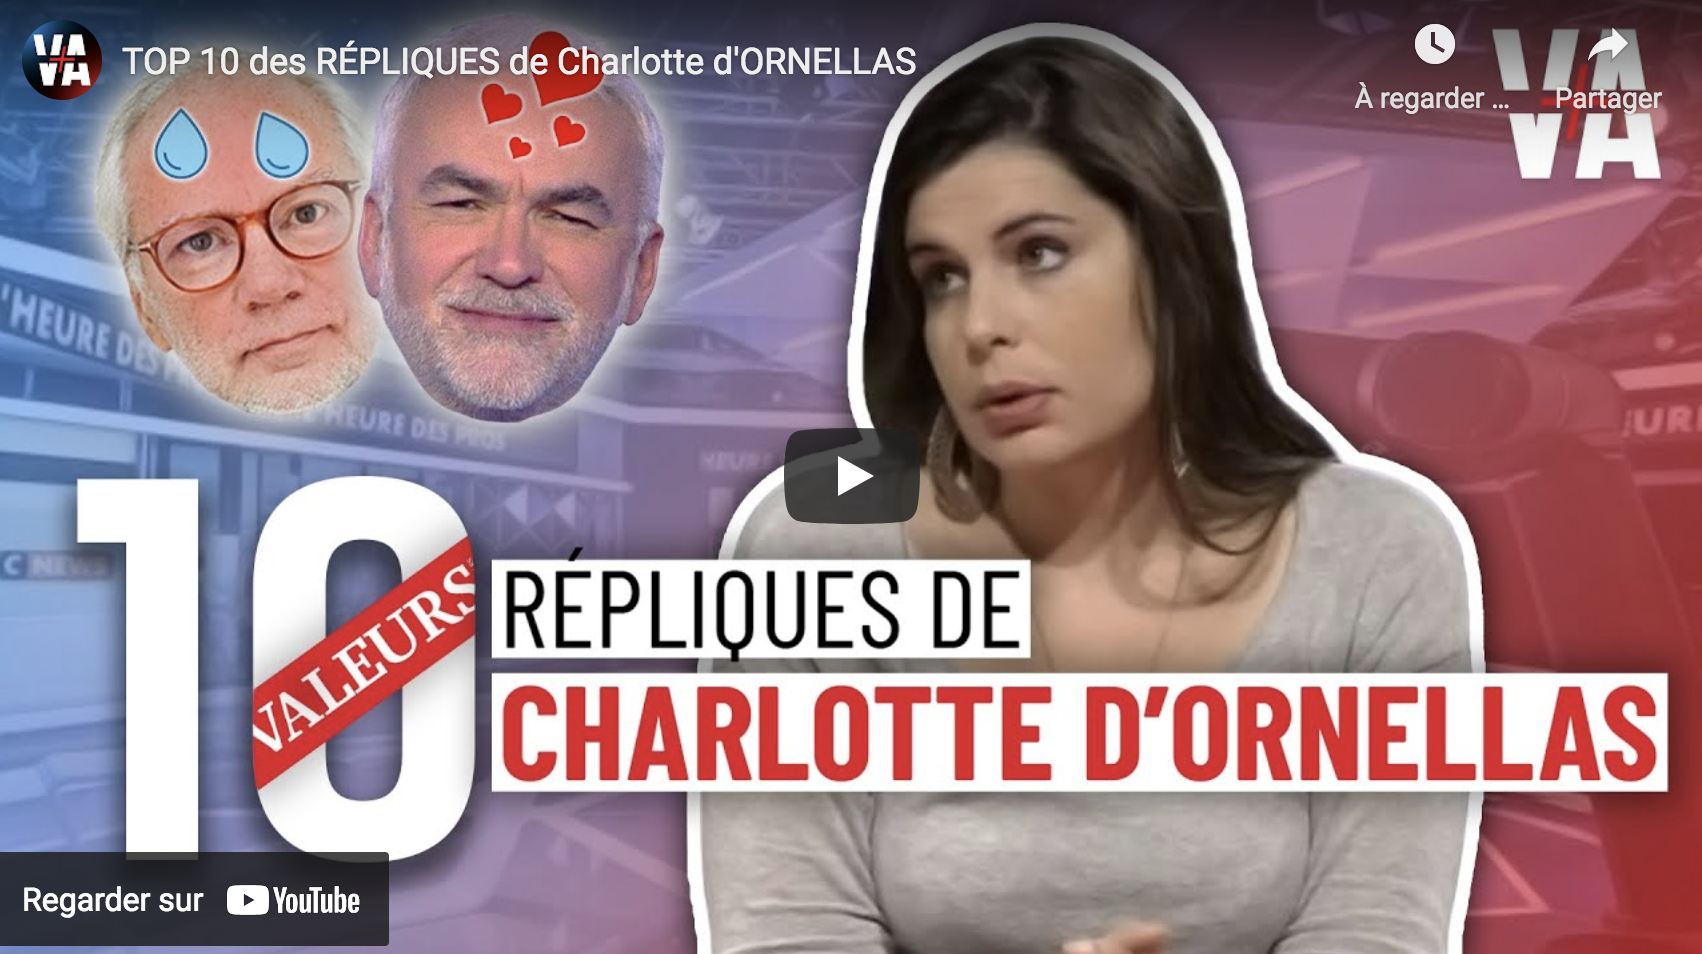 TOP 10 des répliques de Charlotte d’Ornellas (VIDÉO)